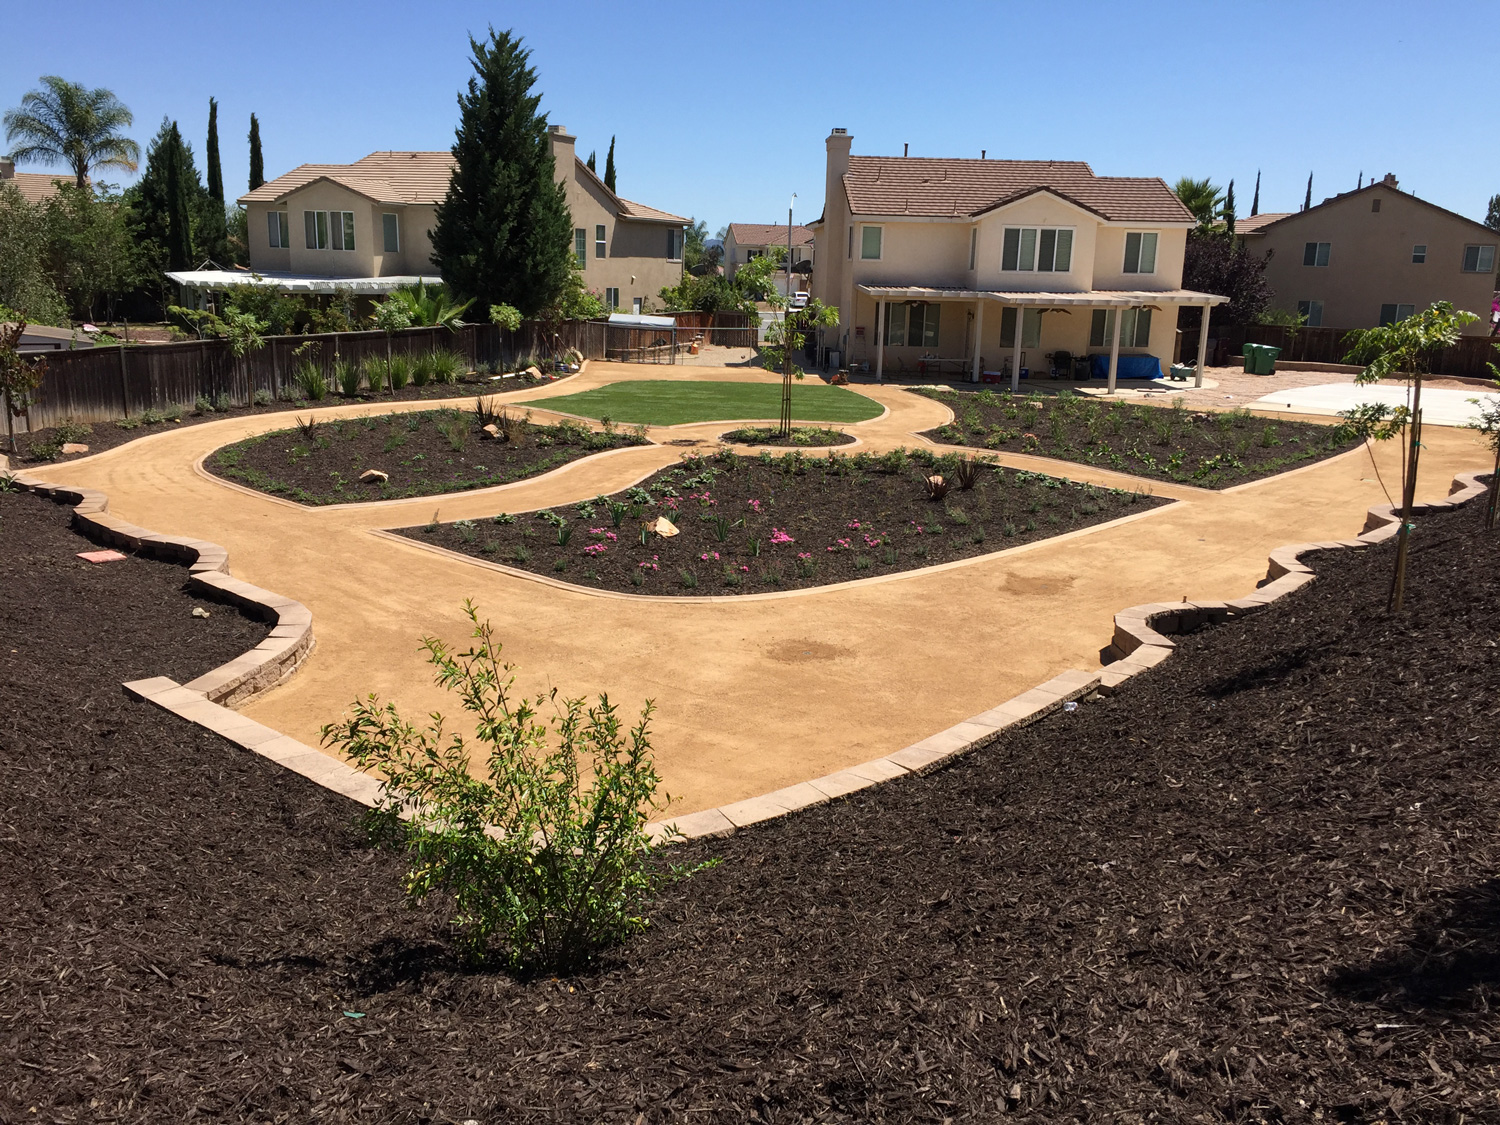 DG pathways with gardens in Murrieta McCabe's Landscape Construction